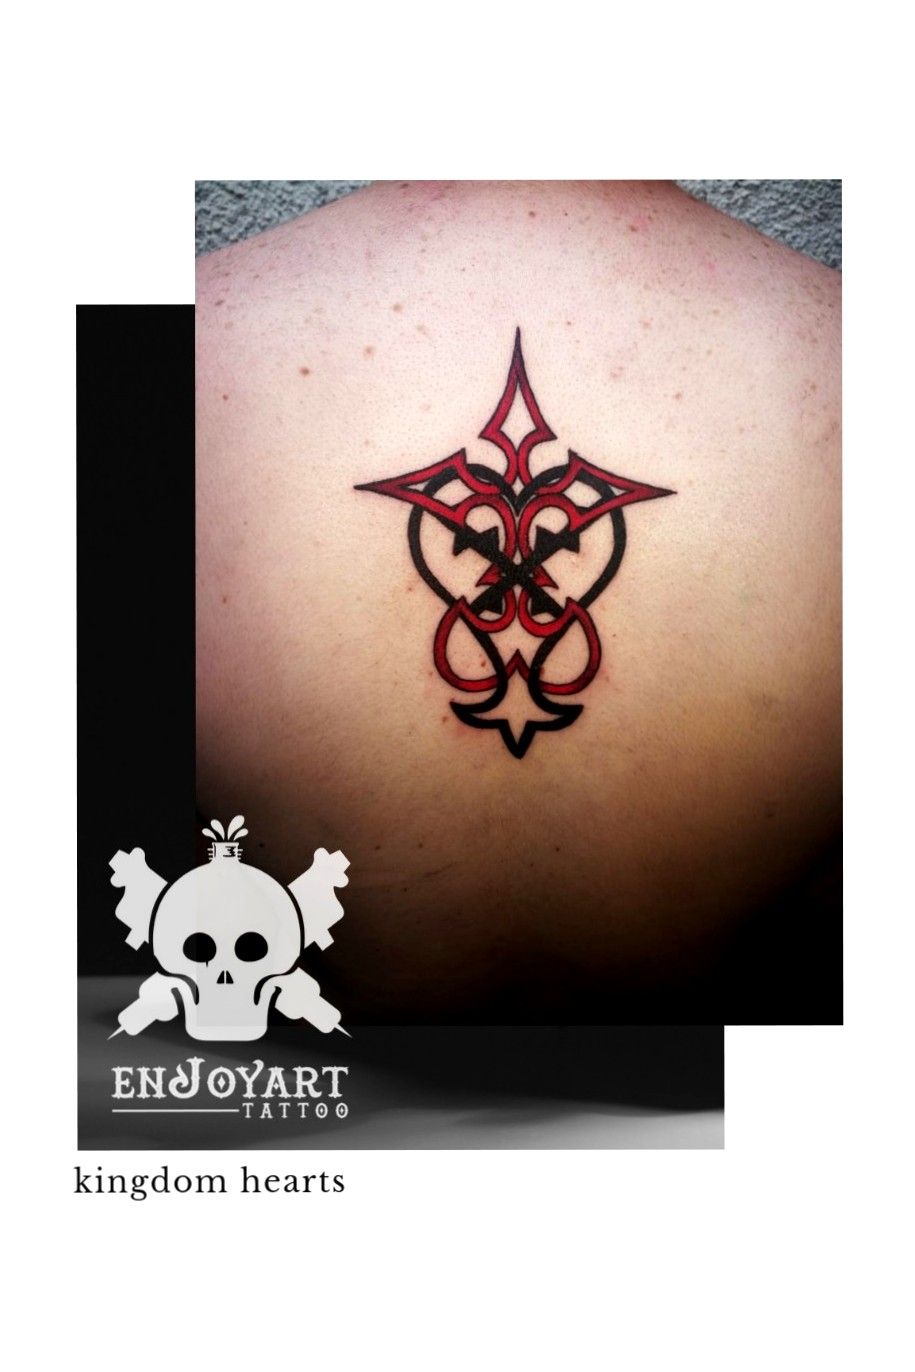 Tattoo uploaded by Philip Splinta  Heartless from Kingdom Hearts  Tattoodo